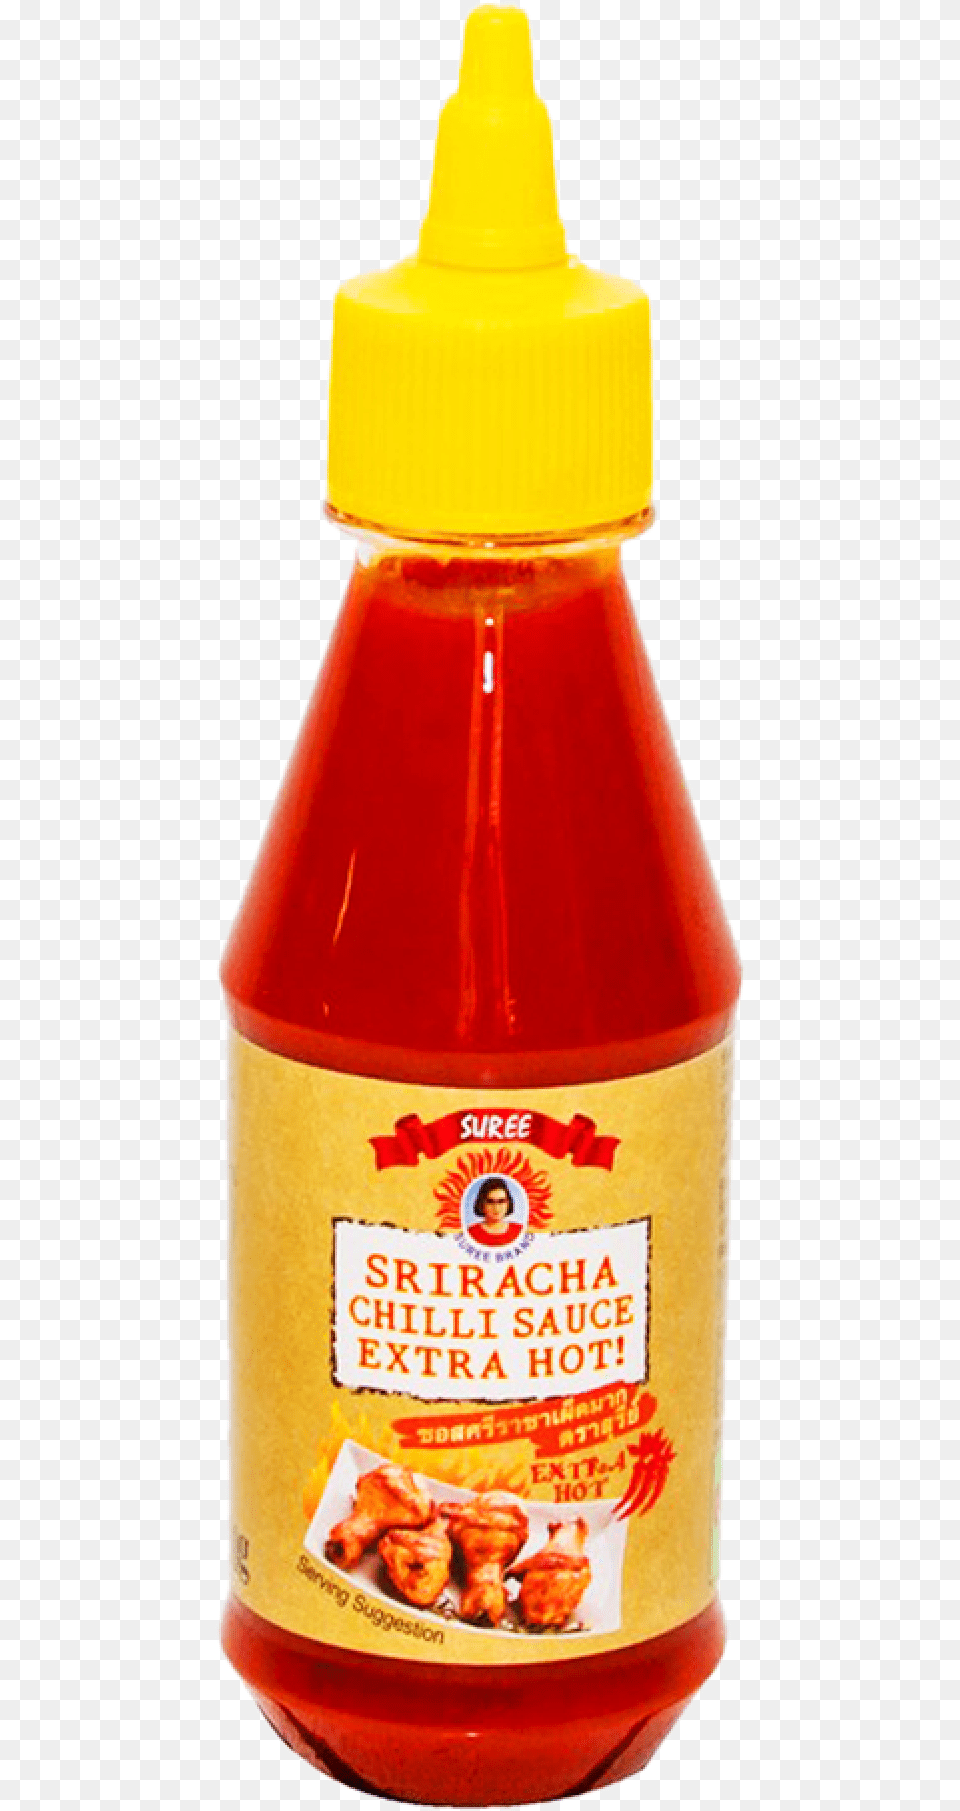 Suree Sauce Sriracha Chili Extra Hot 200 Ml, Food, Ketchup Free Png